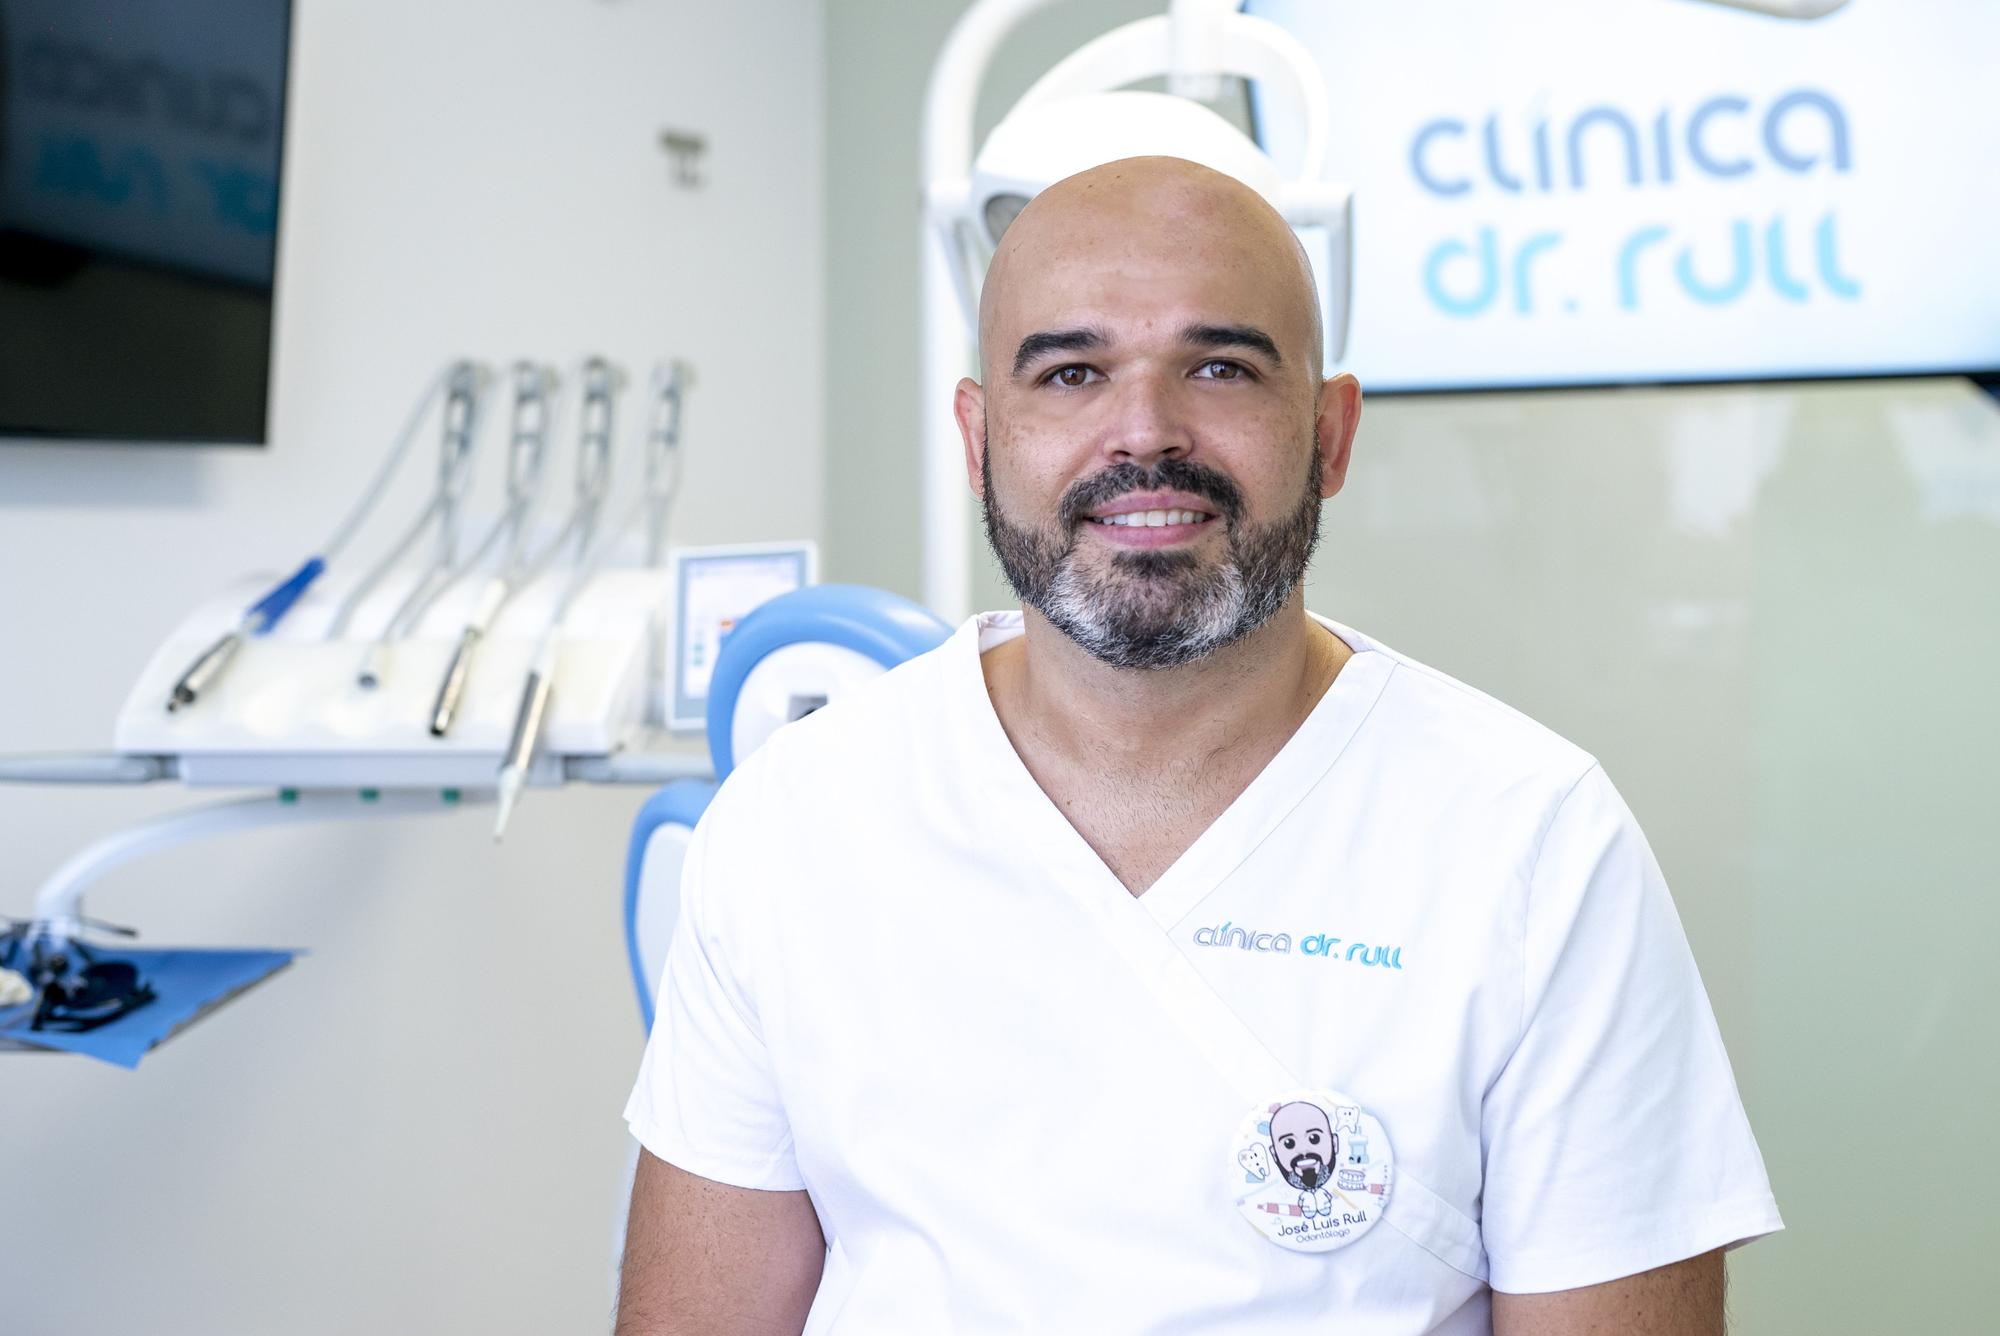 José Luis Rull Rivera dirige el área de Odontología de la Clínica Dr. Rull.